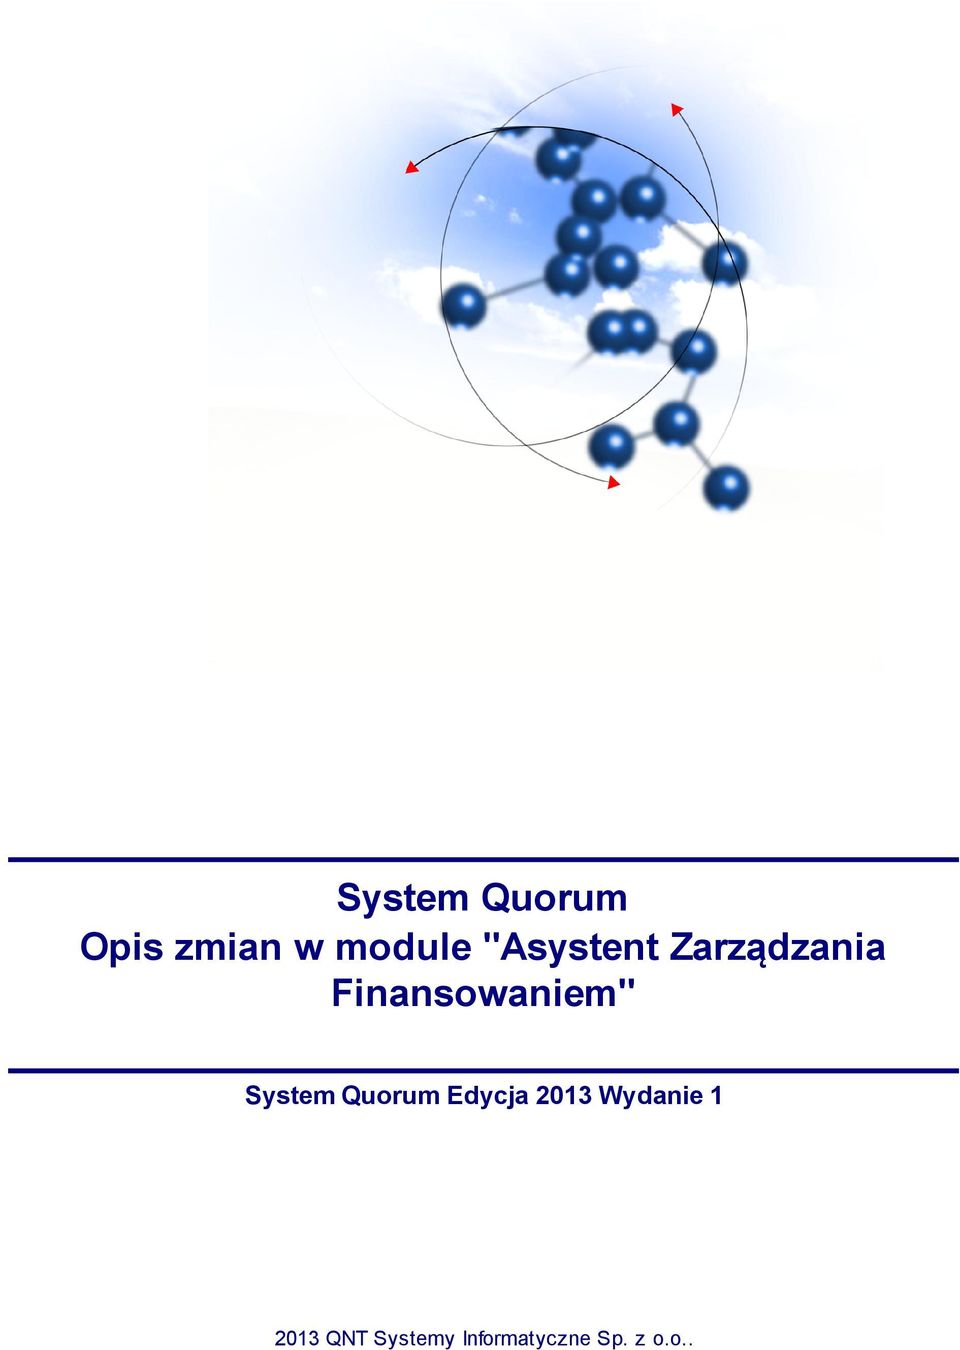 System Quorum Edycja 2013 Wydanie 1